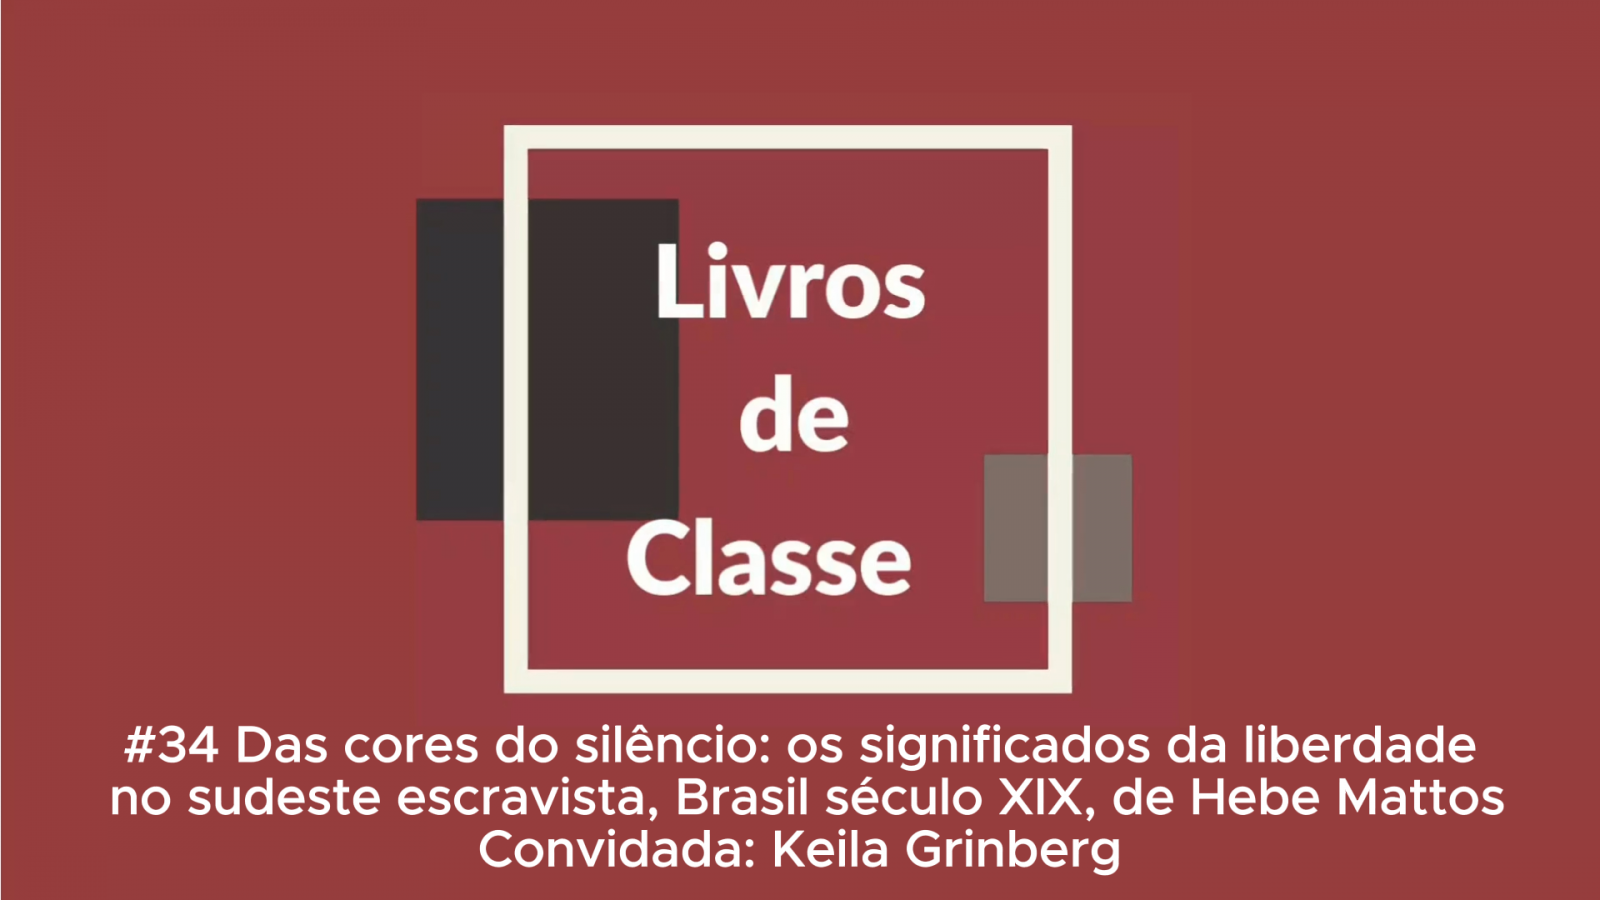 Livros de Classe #34: Das cores do silêncio: os significados da liberdade no Sudeste escravista, Brasil século XIX, de Hebe Mattos, por Keila Grinberg